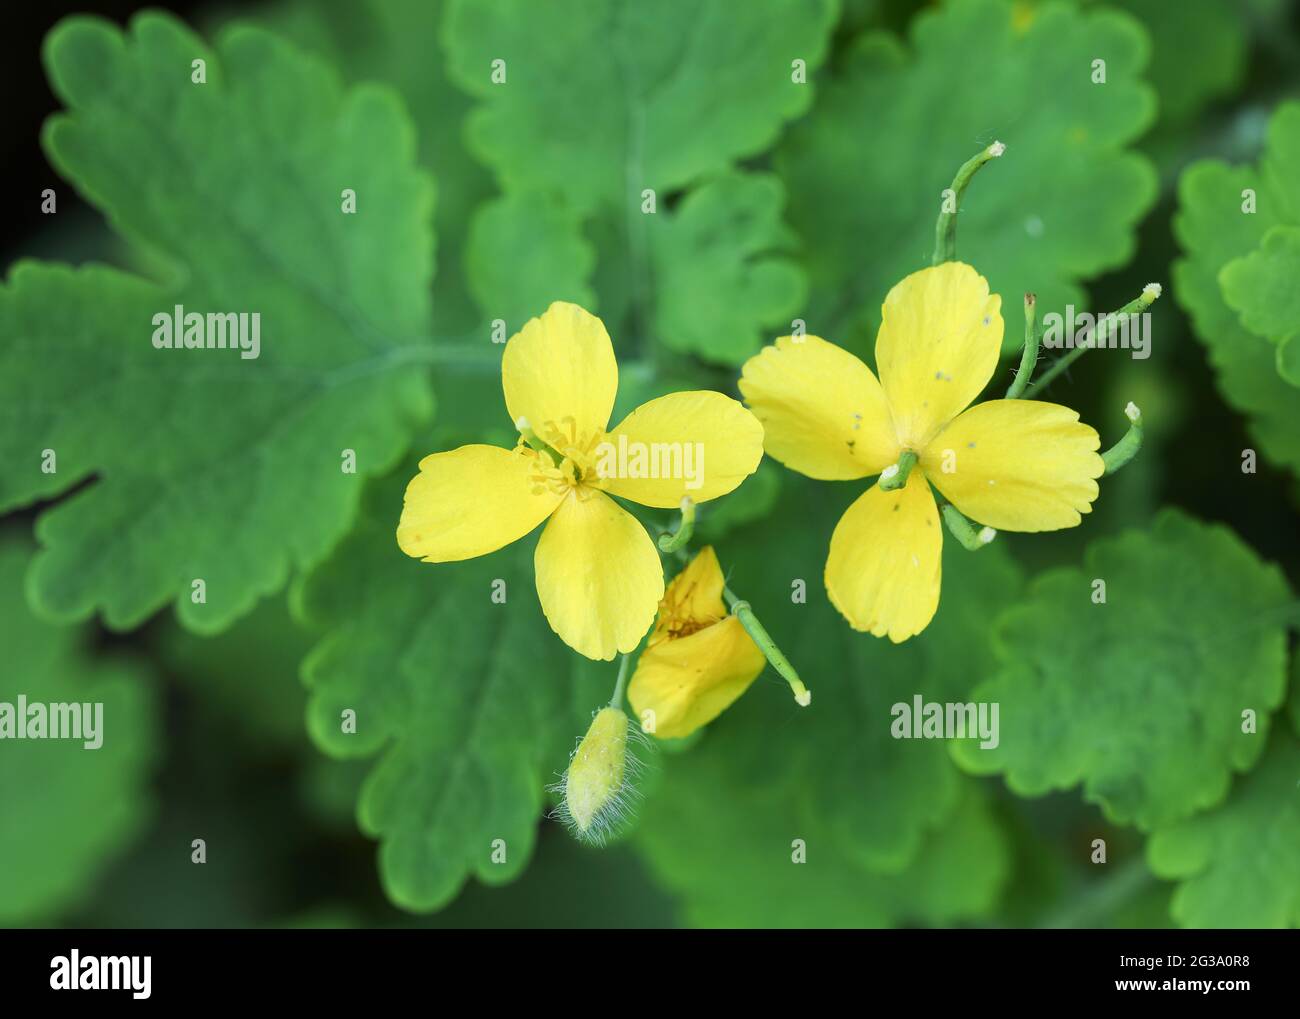 Tetterwort (Chelidonium majus) Stock Photo